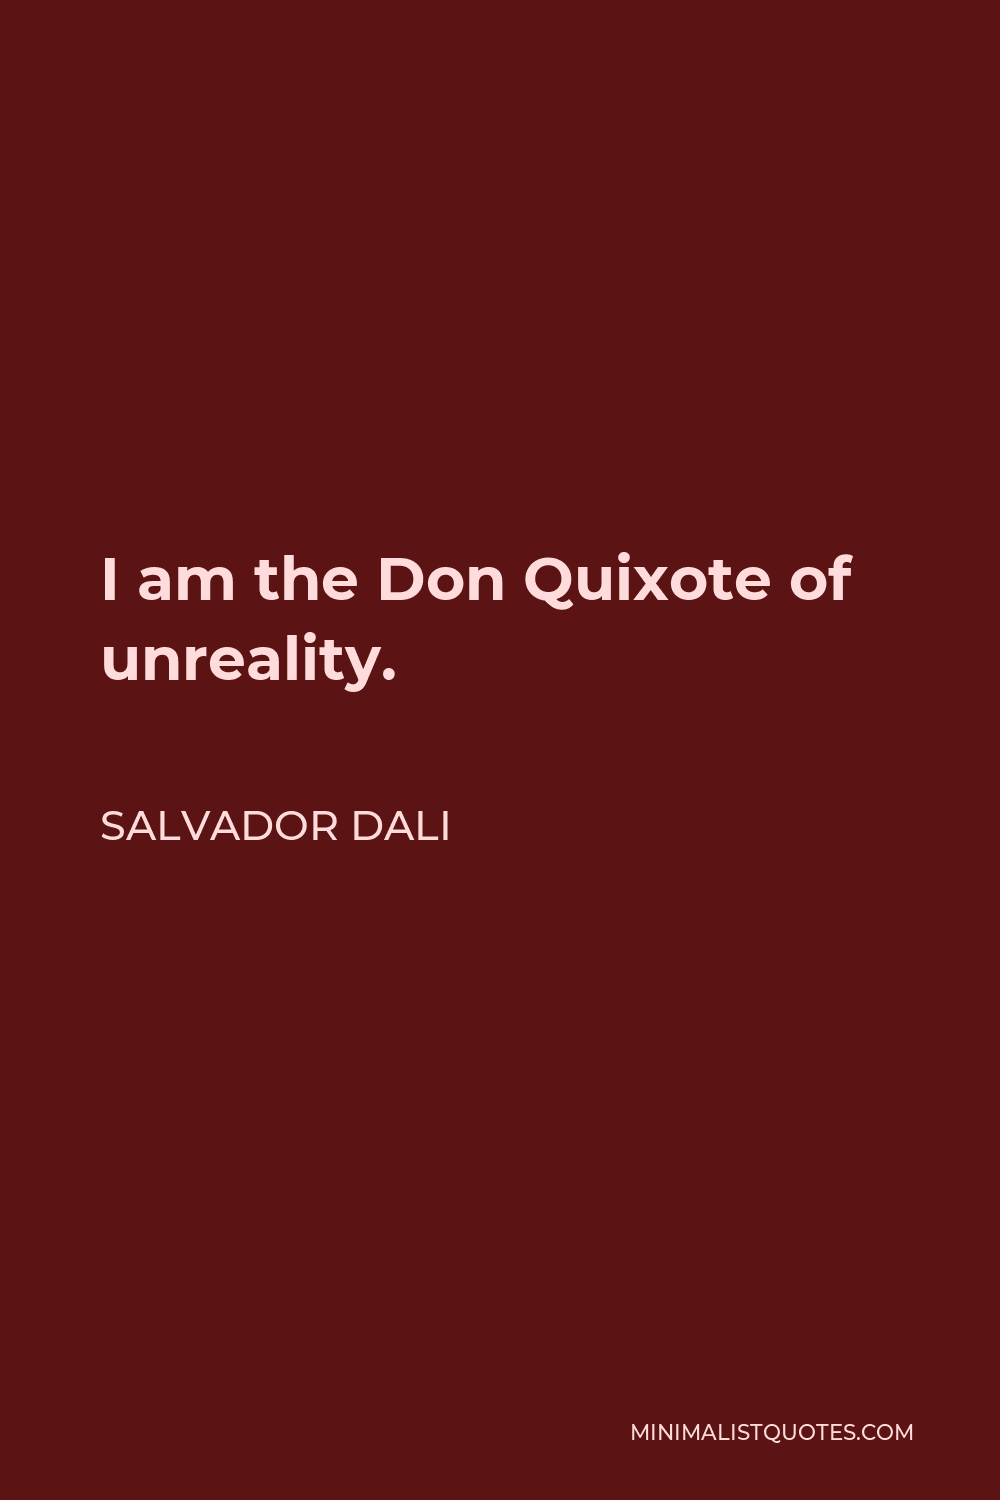 Salvador Dali Quote - I am the Don Quixote of unreality.